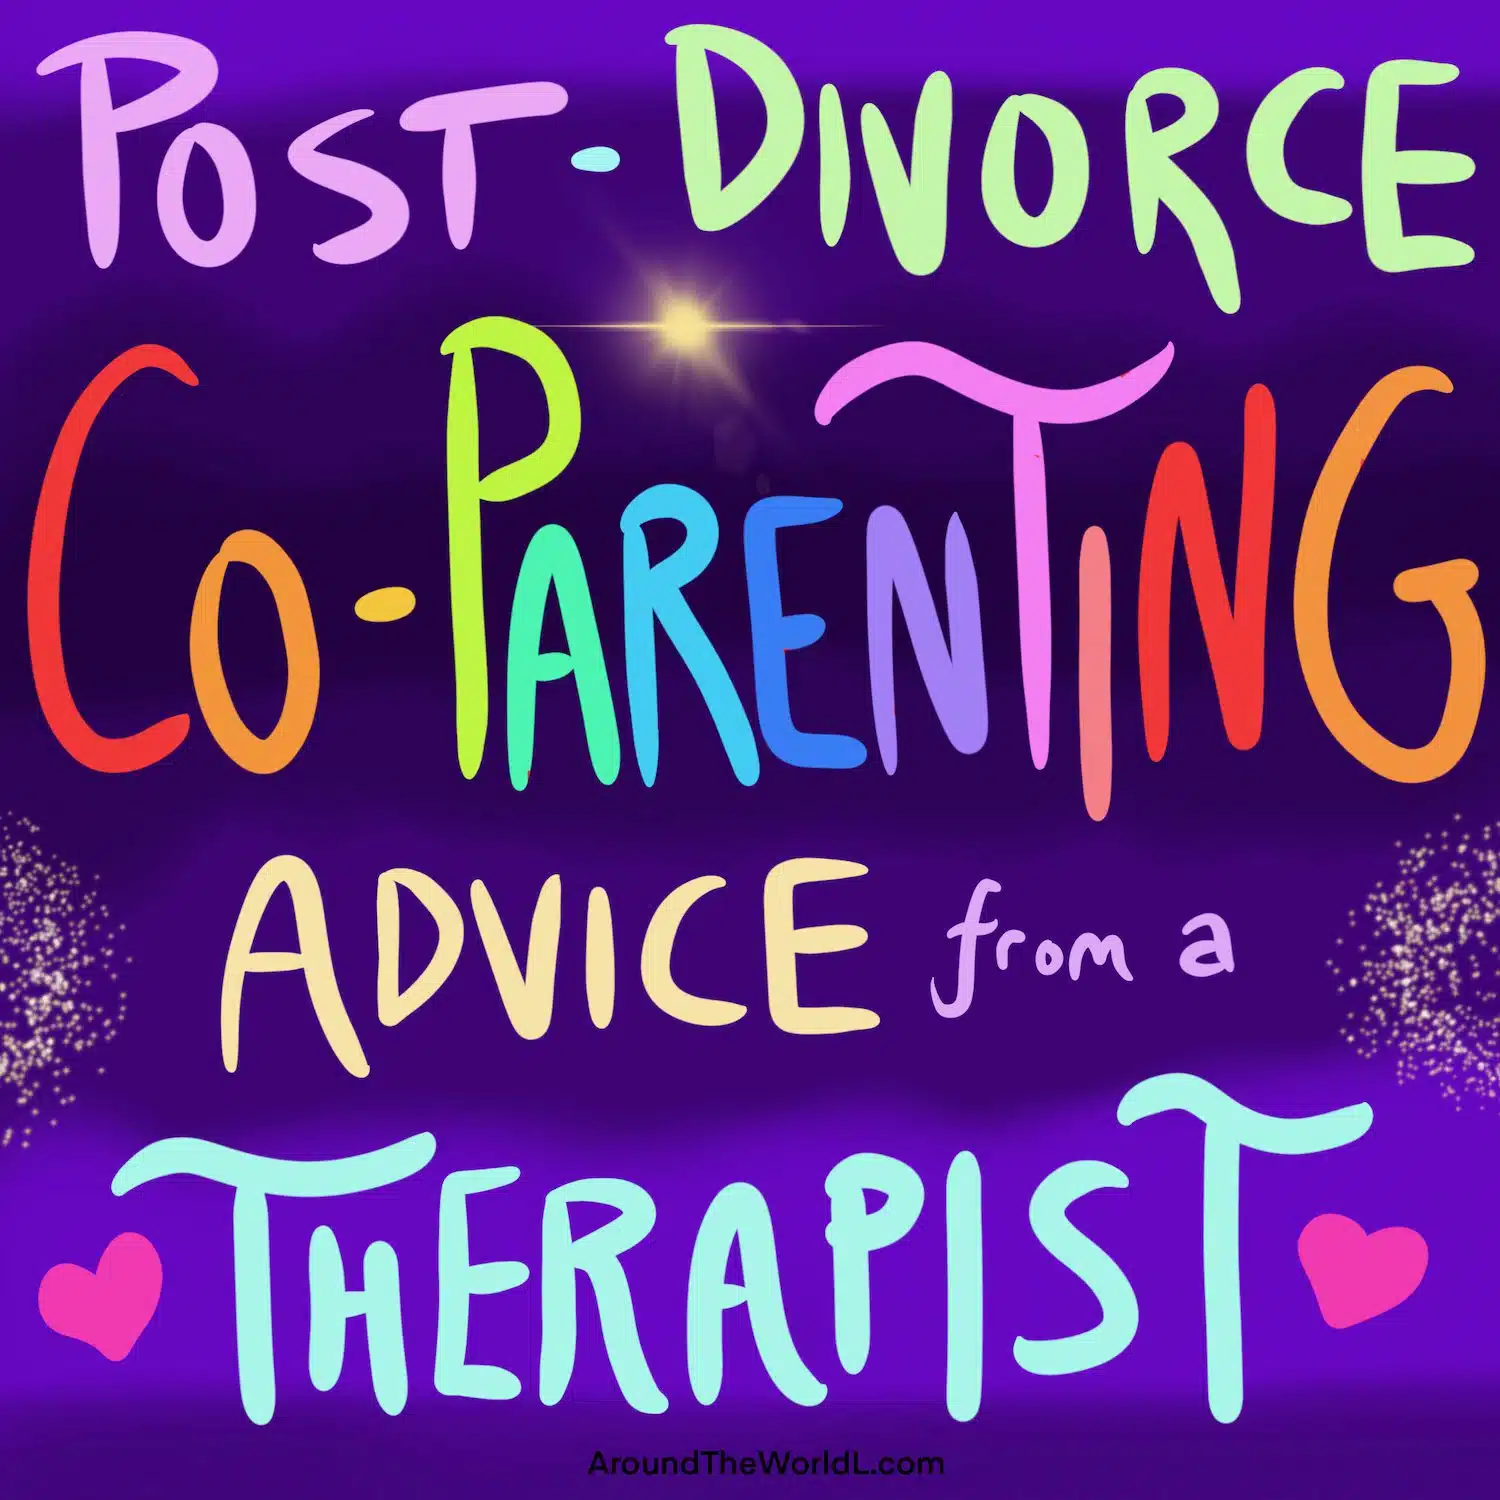 Co-parenting after divorce